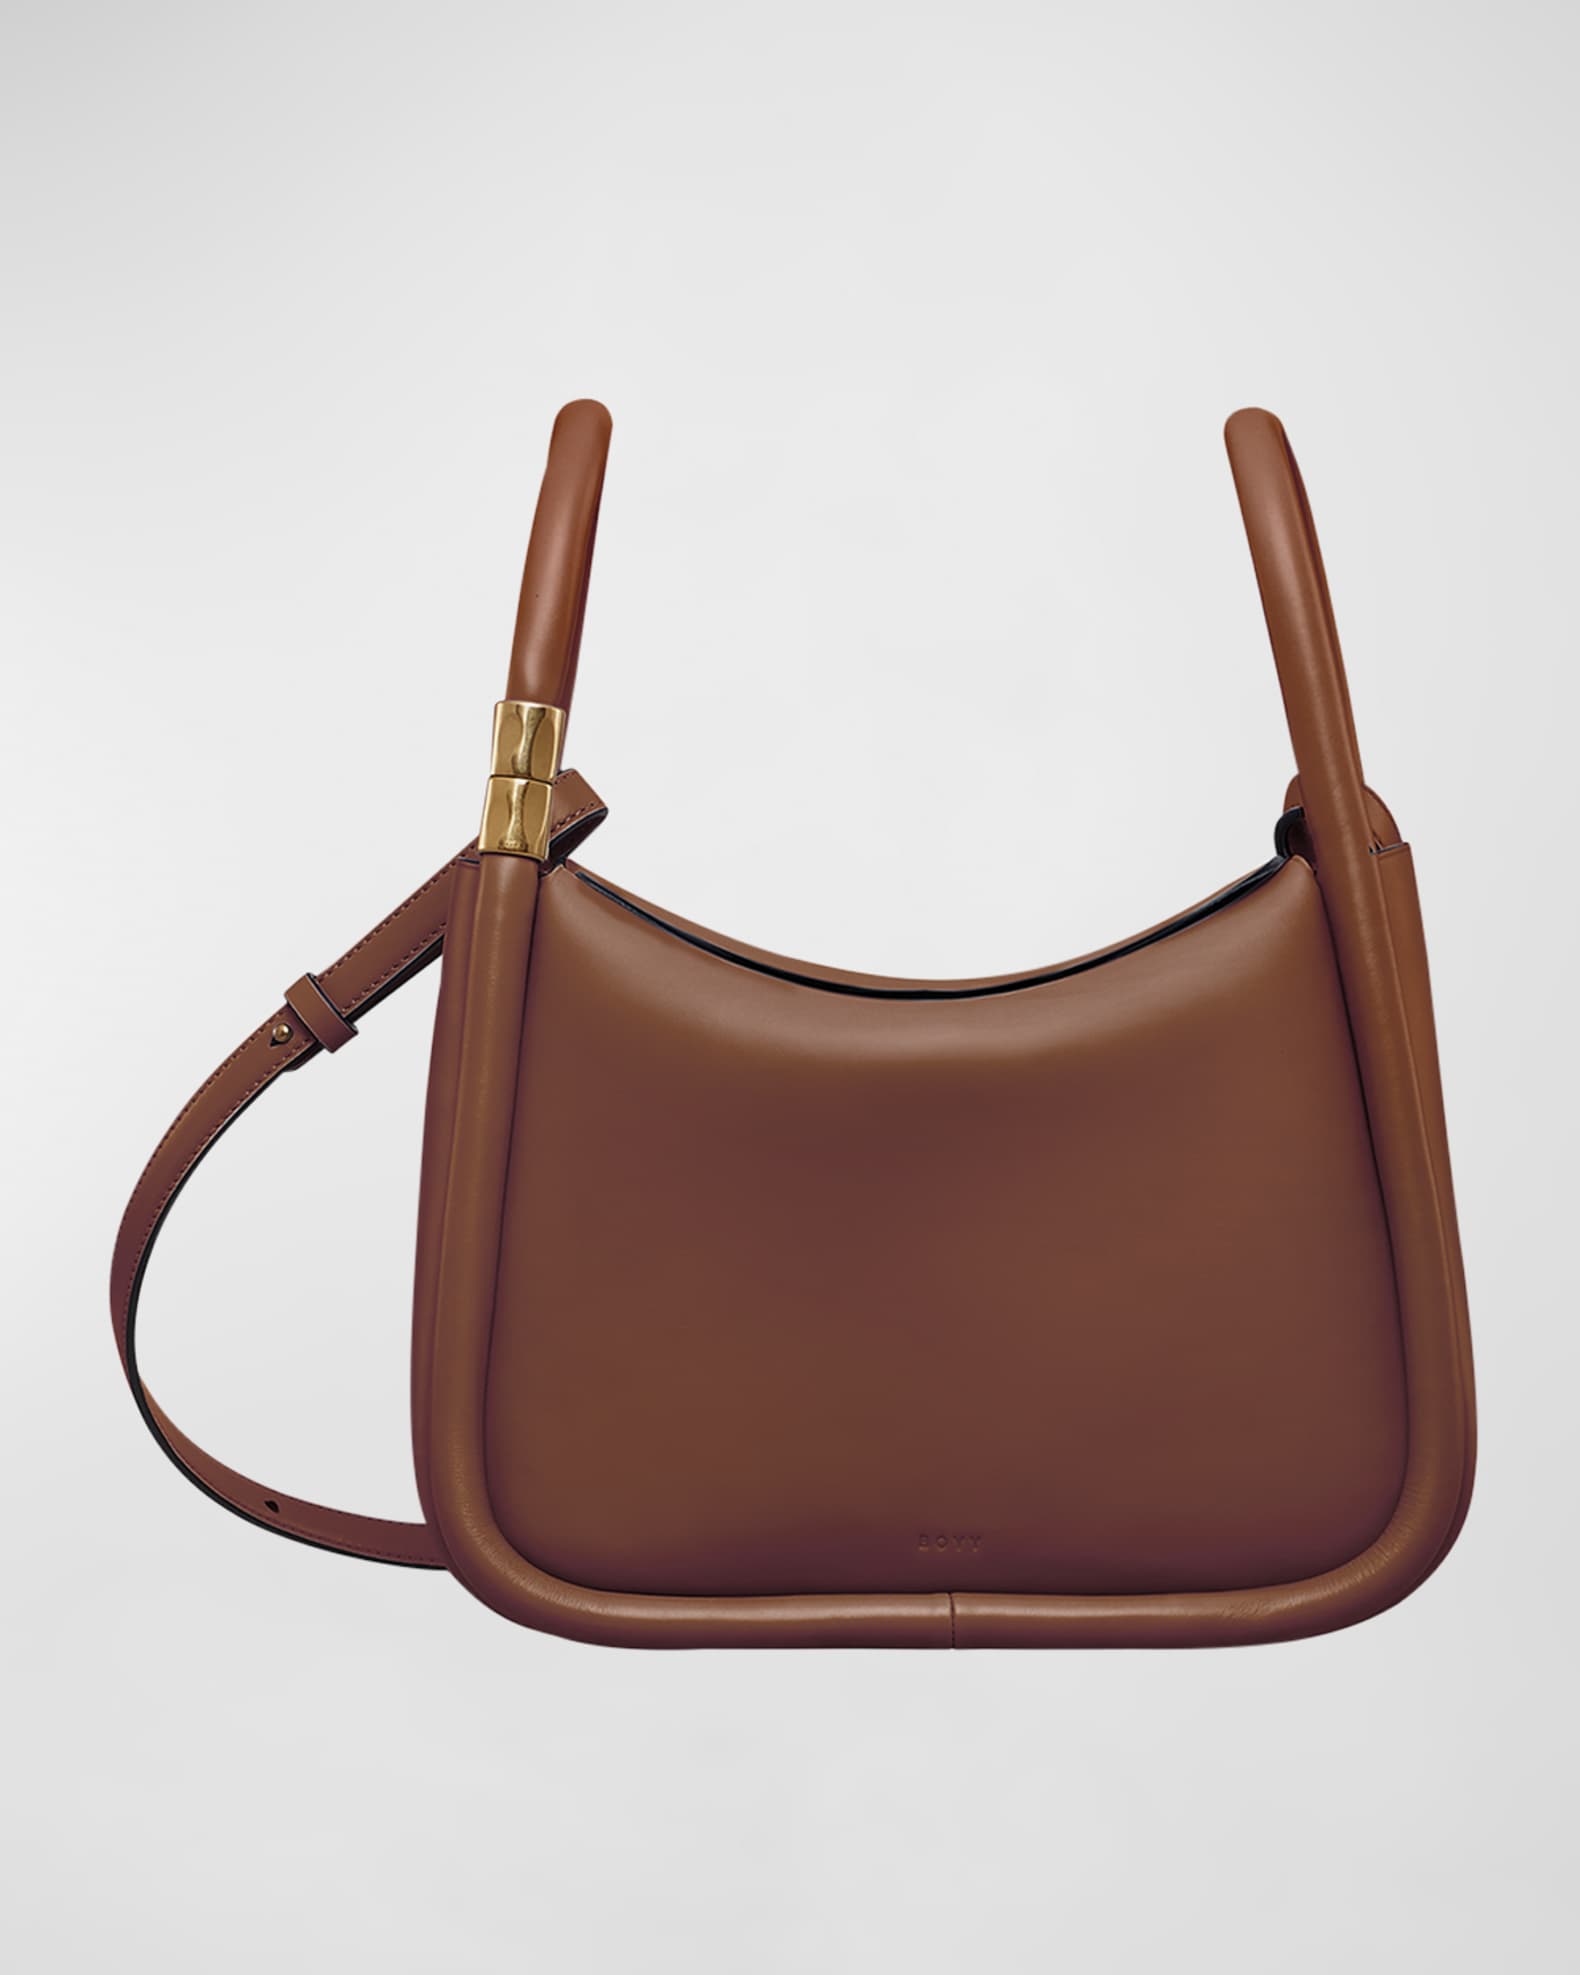 Boyy Wonton 25 Leather Top Handle Bag | Neiman Marcus